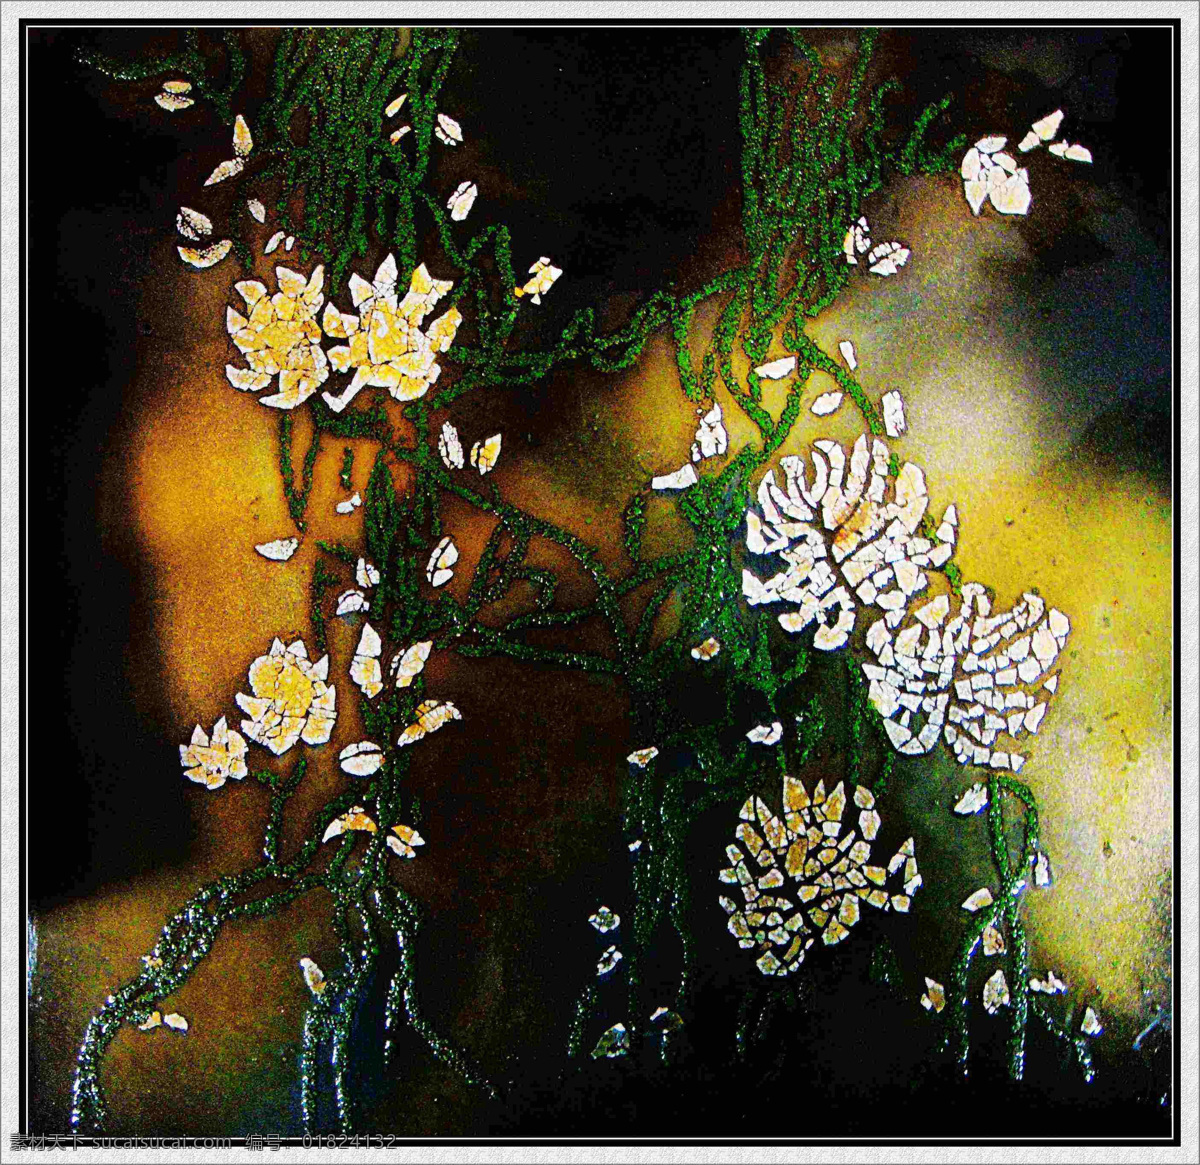 现代 抽象 装饰 漆画 花卉 植物 绘画书法 文化艺术